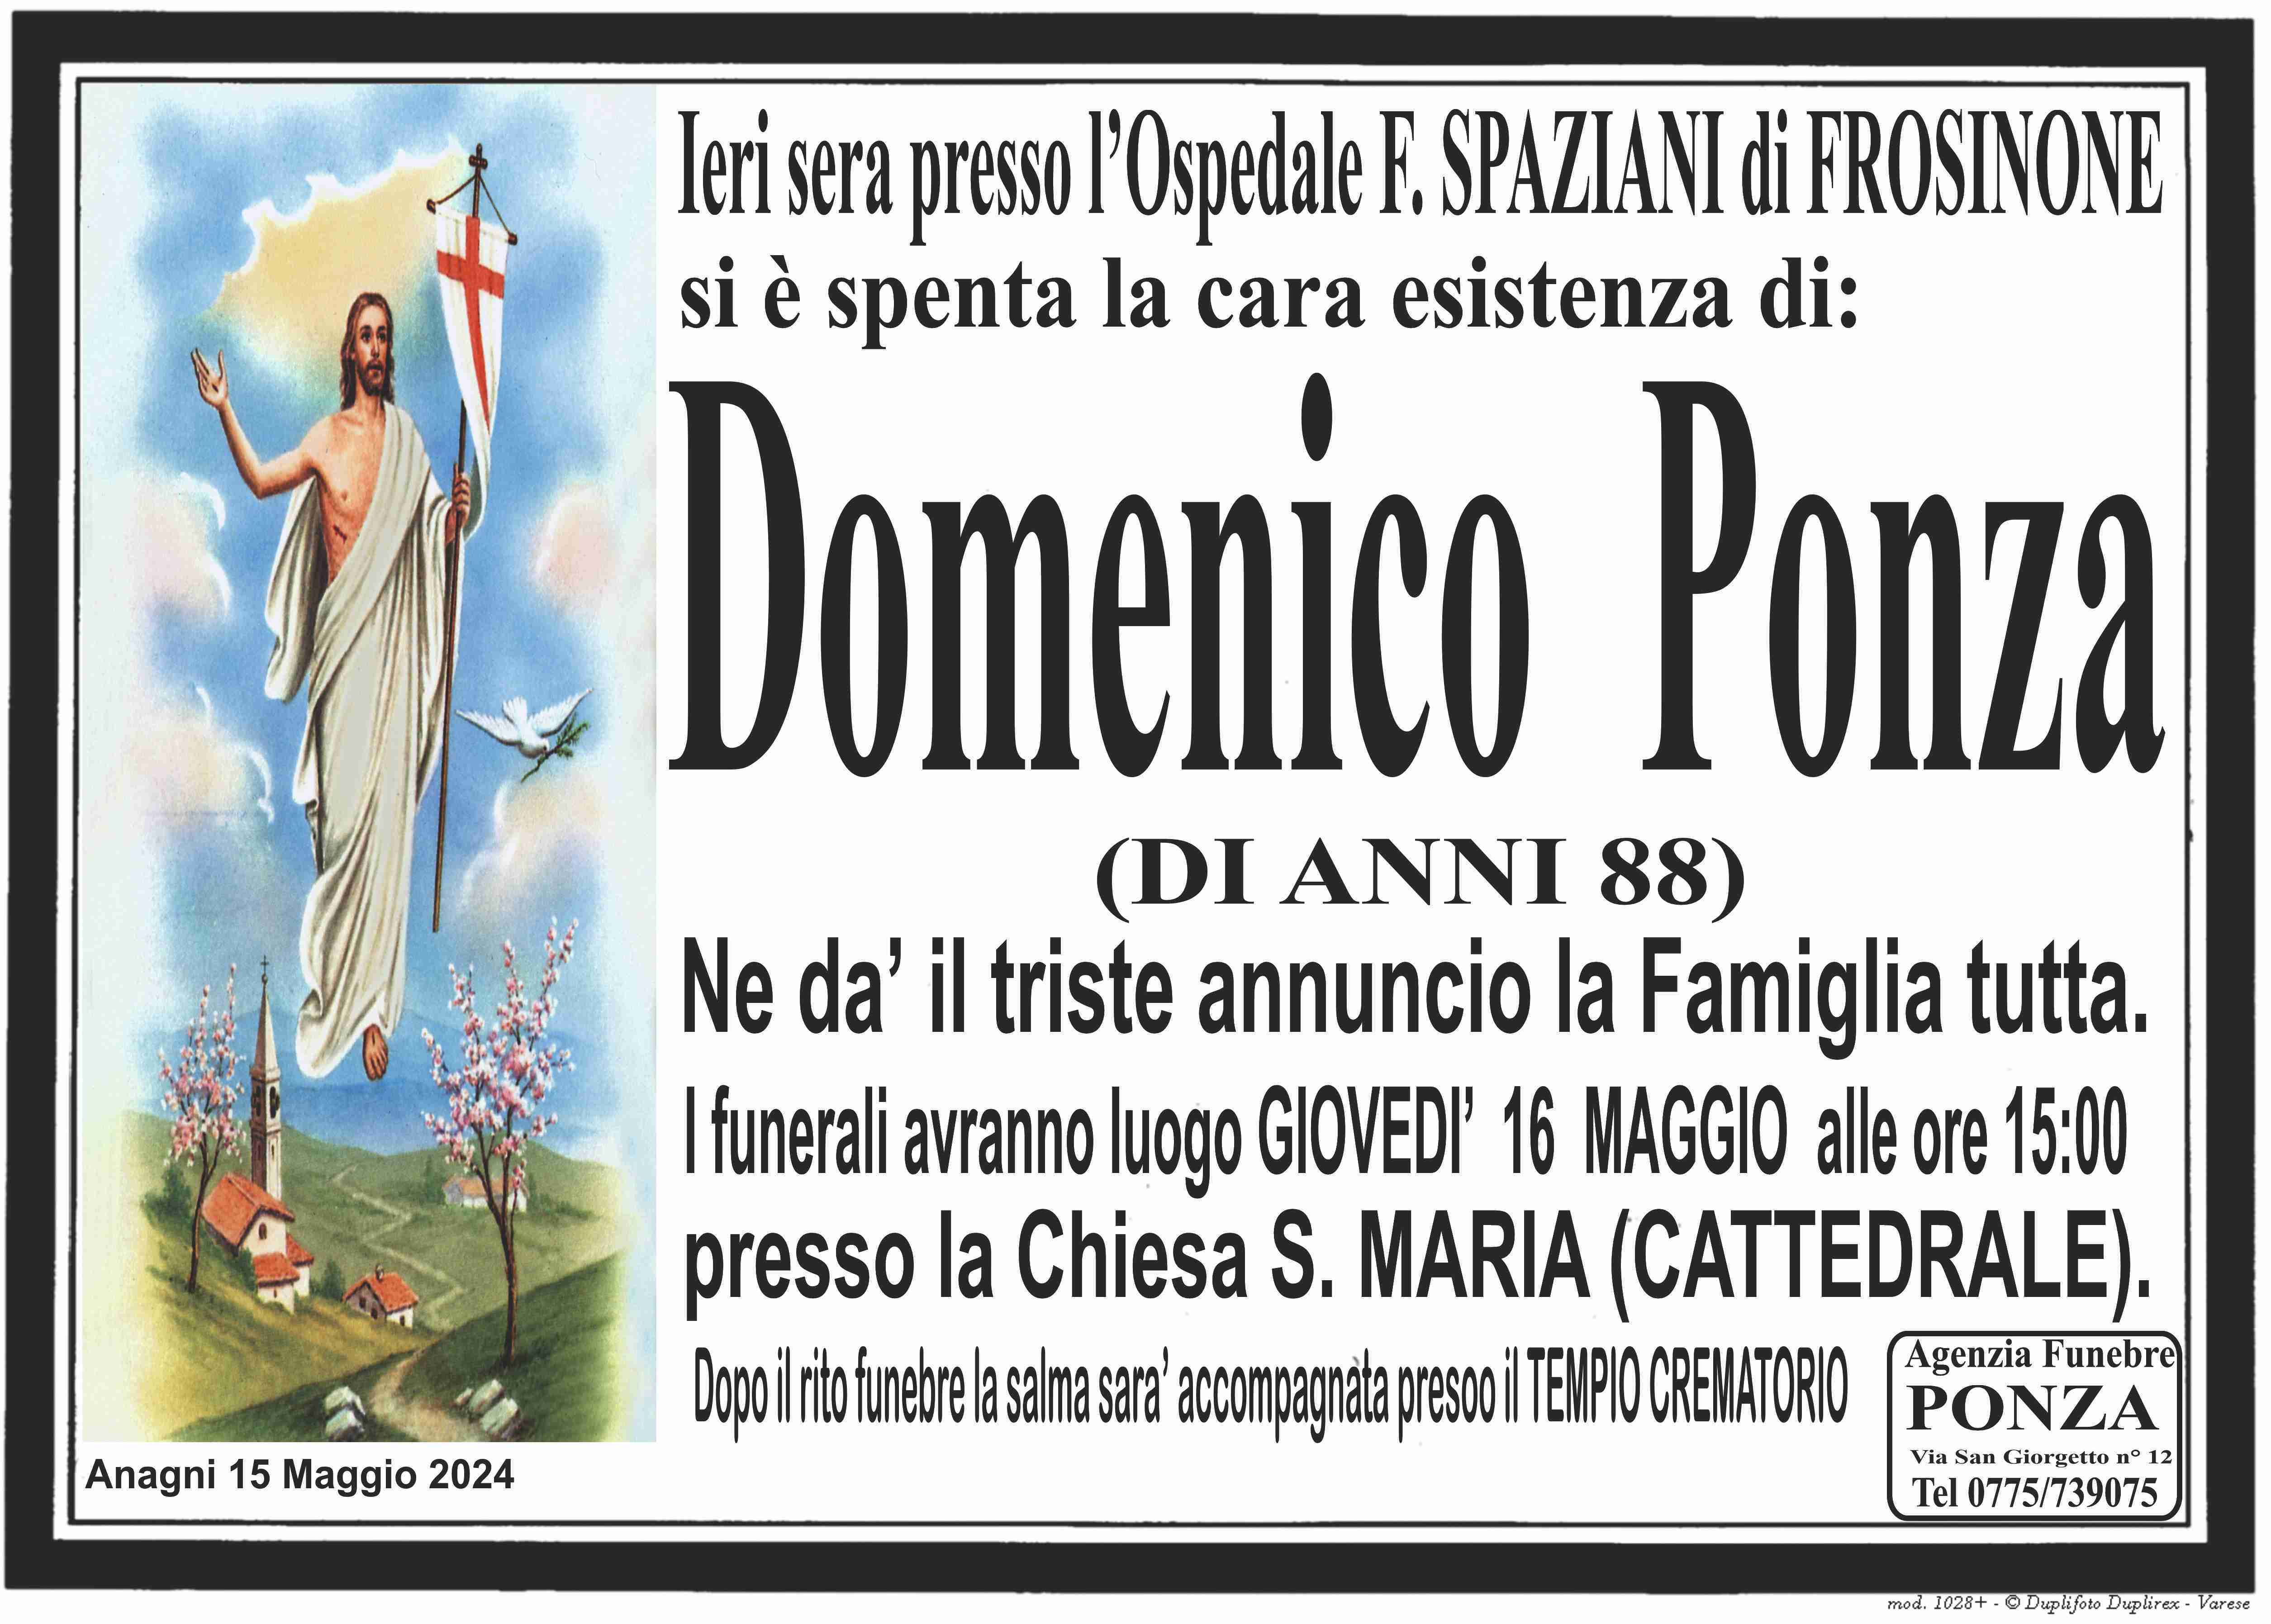 Domenico Ponza